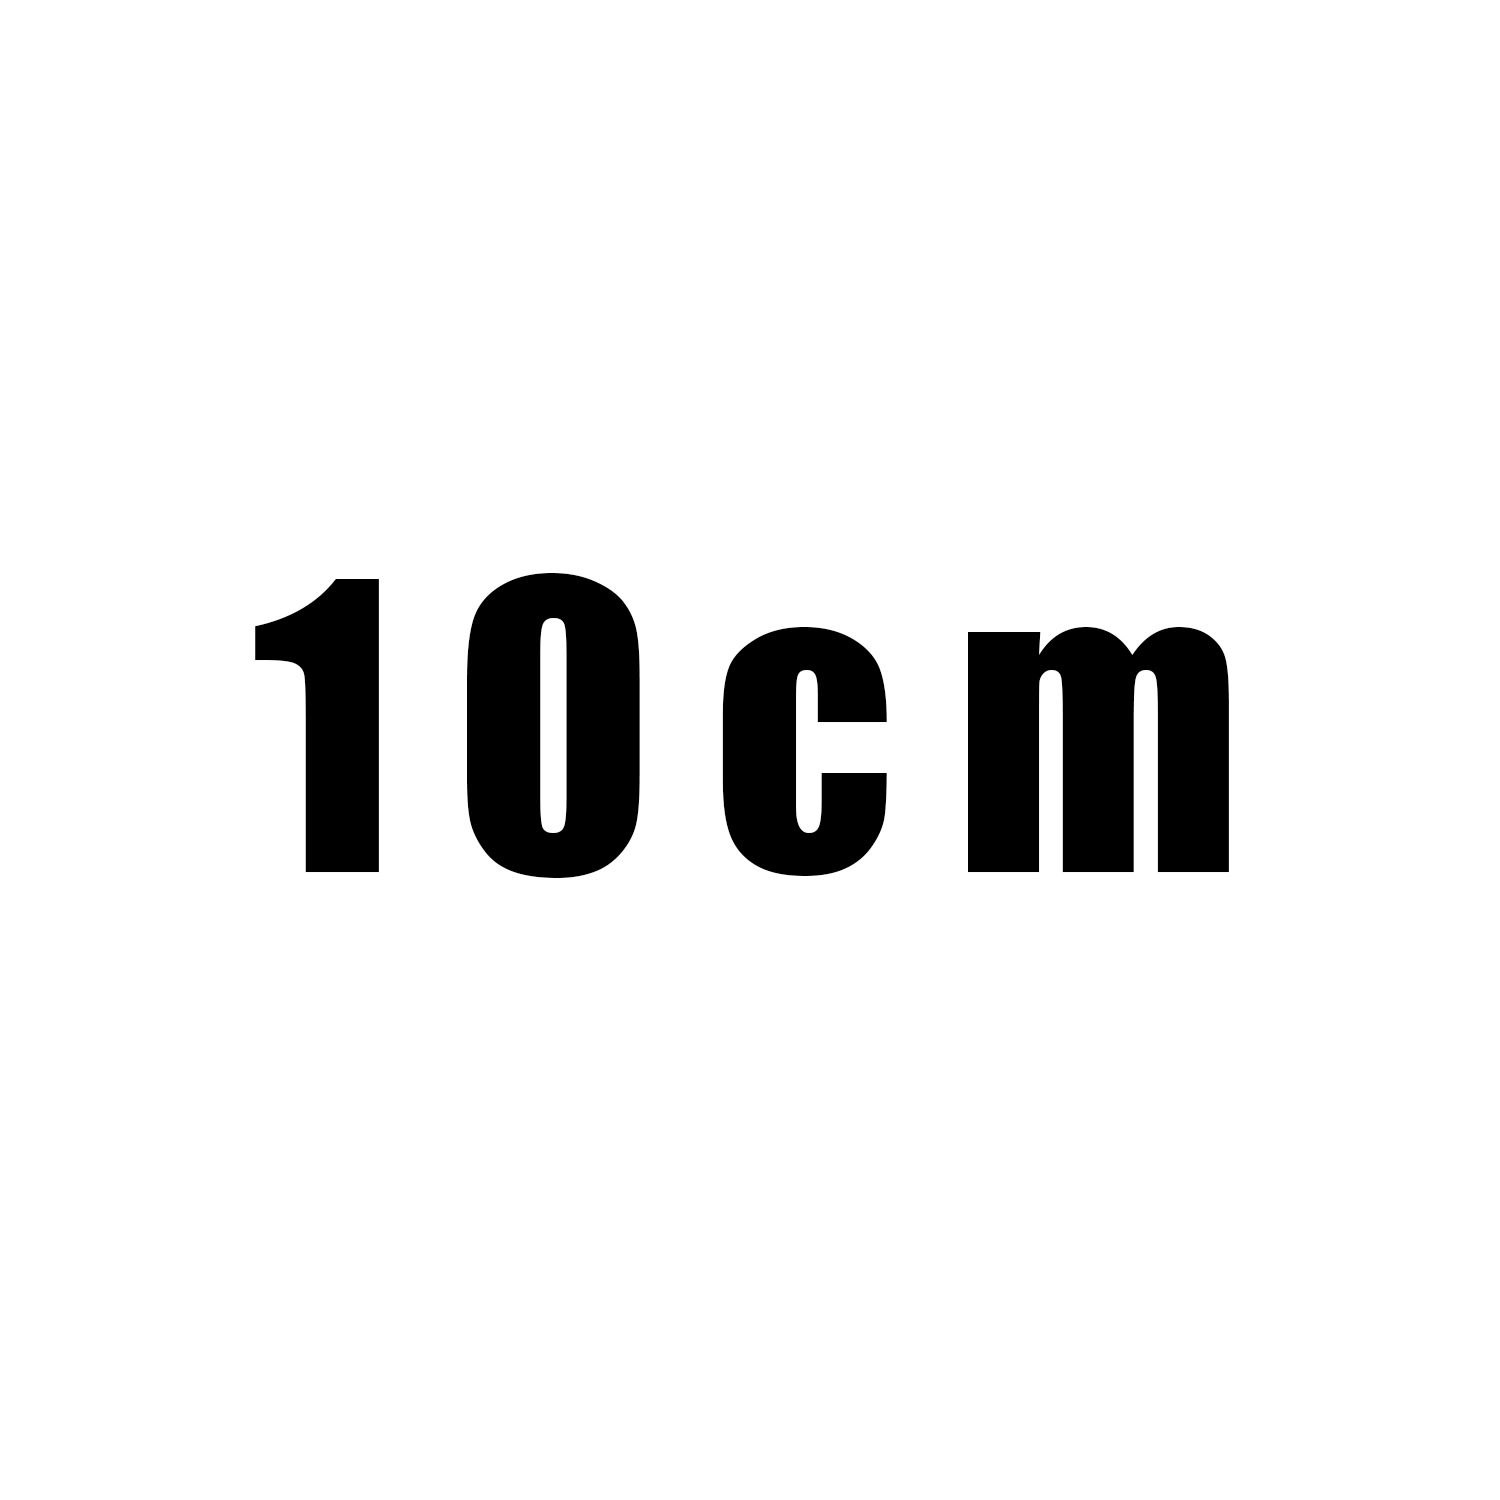 10 cm